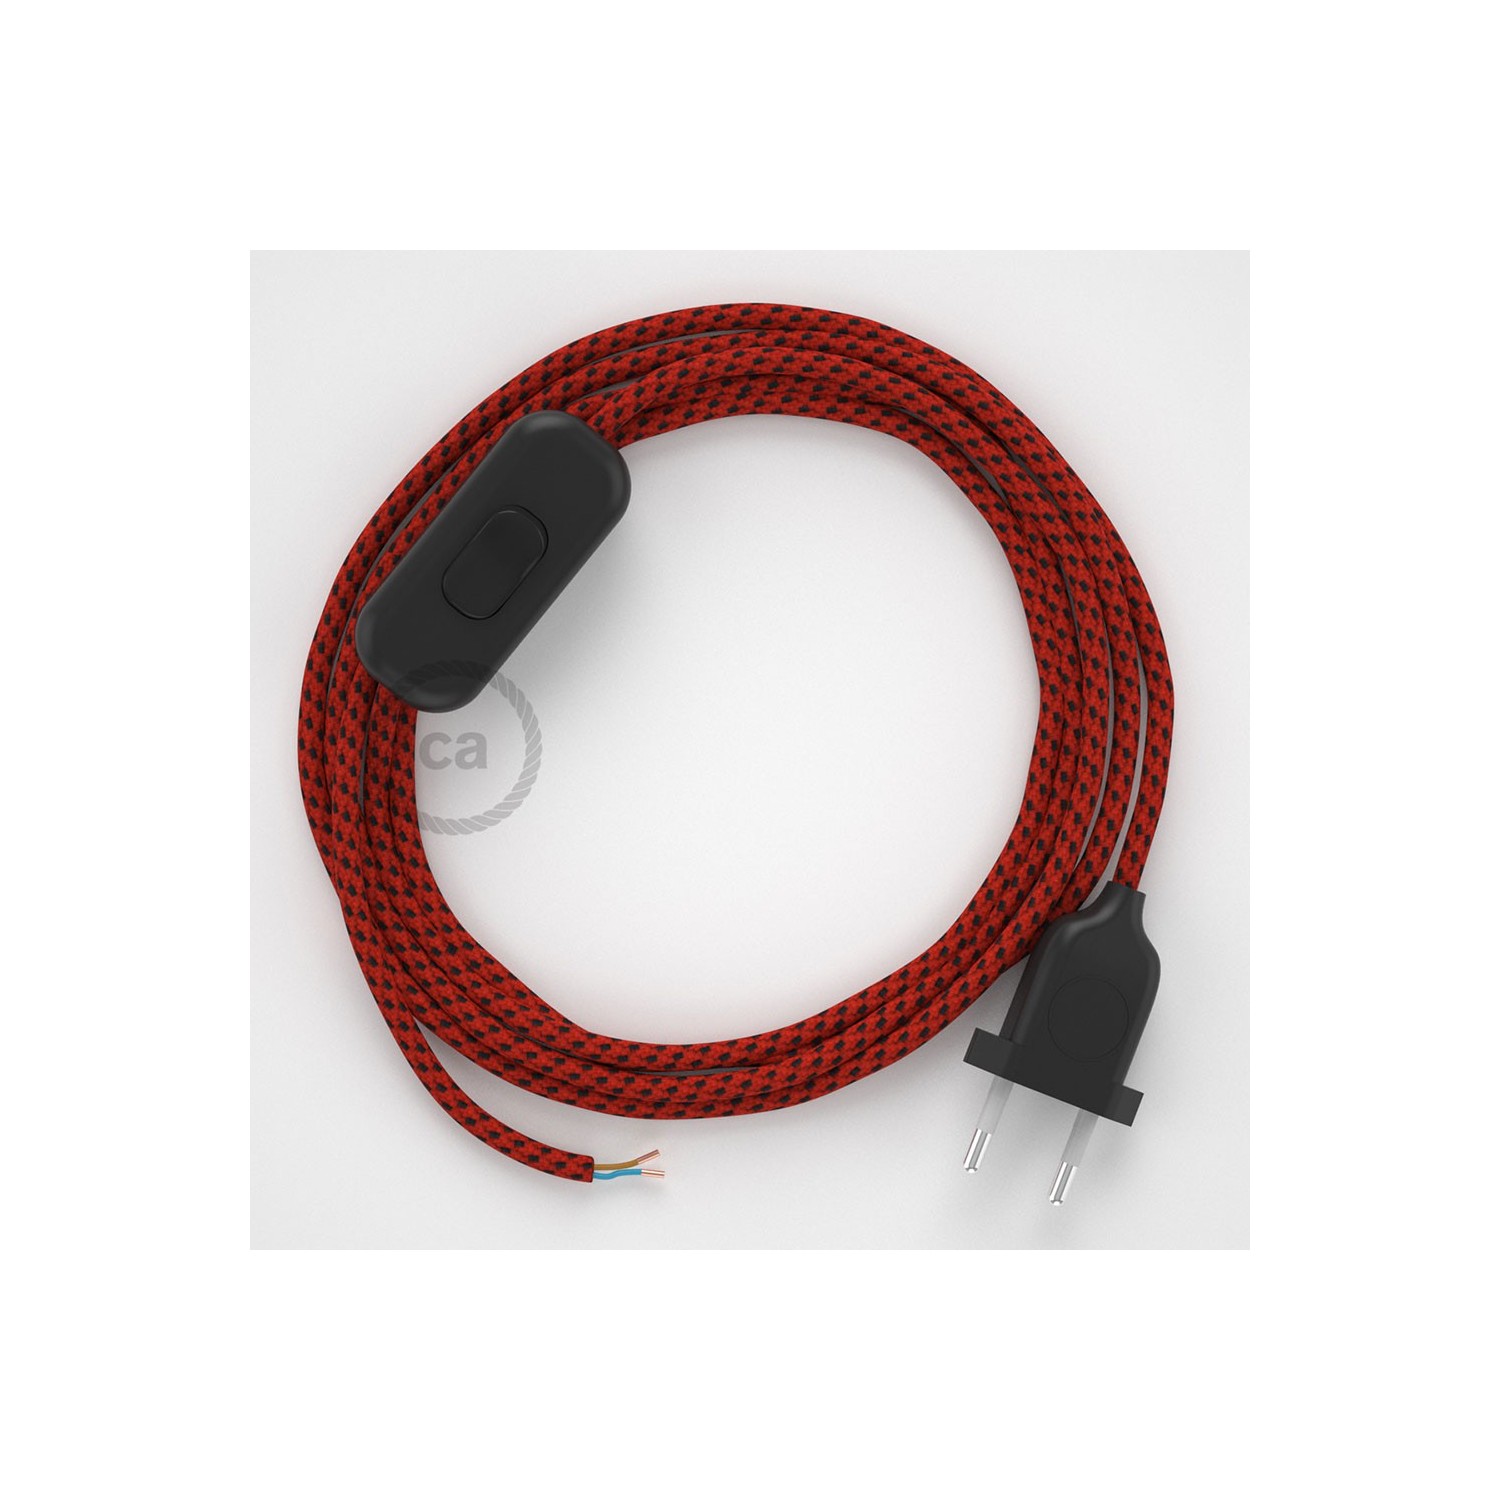 Cordon pour lampe, câble RT94 Effet Soie Red Devil 1,80 m. Choisissez la couleur de la fiche et de l'interrupteur!